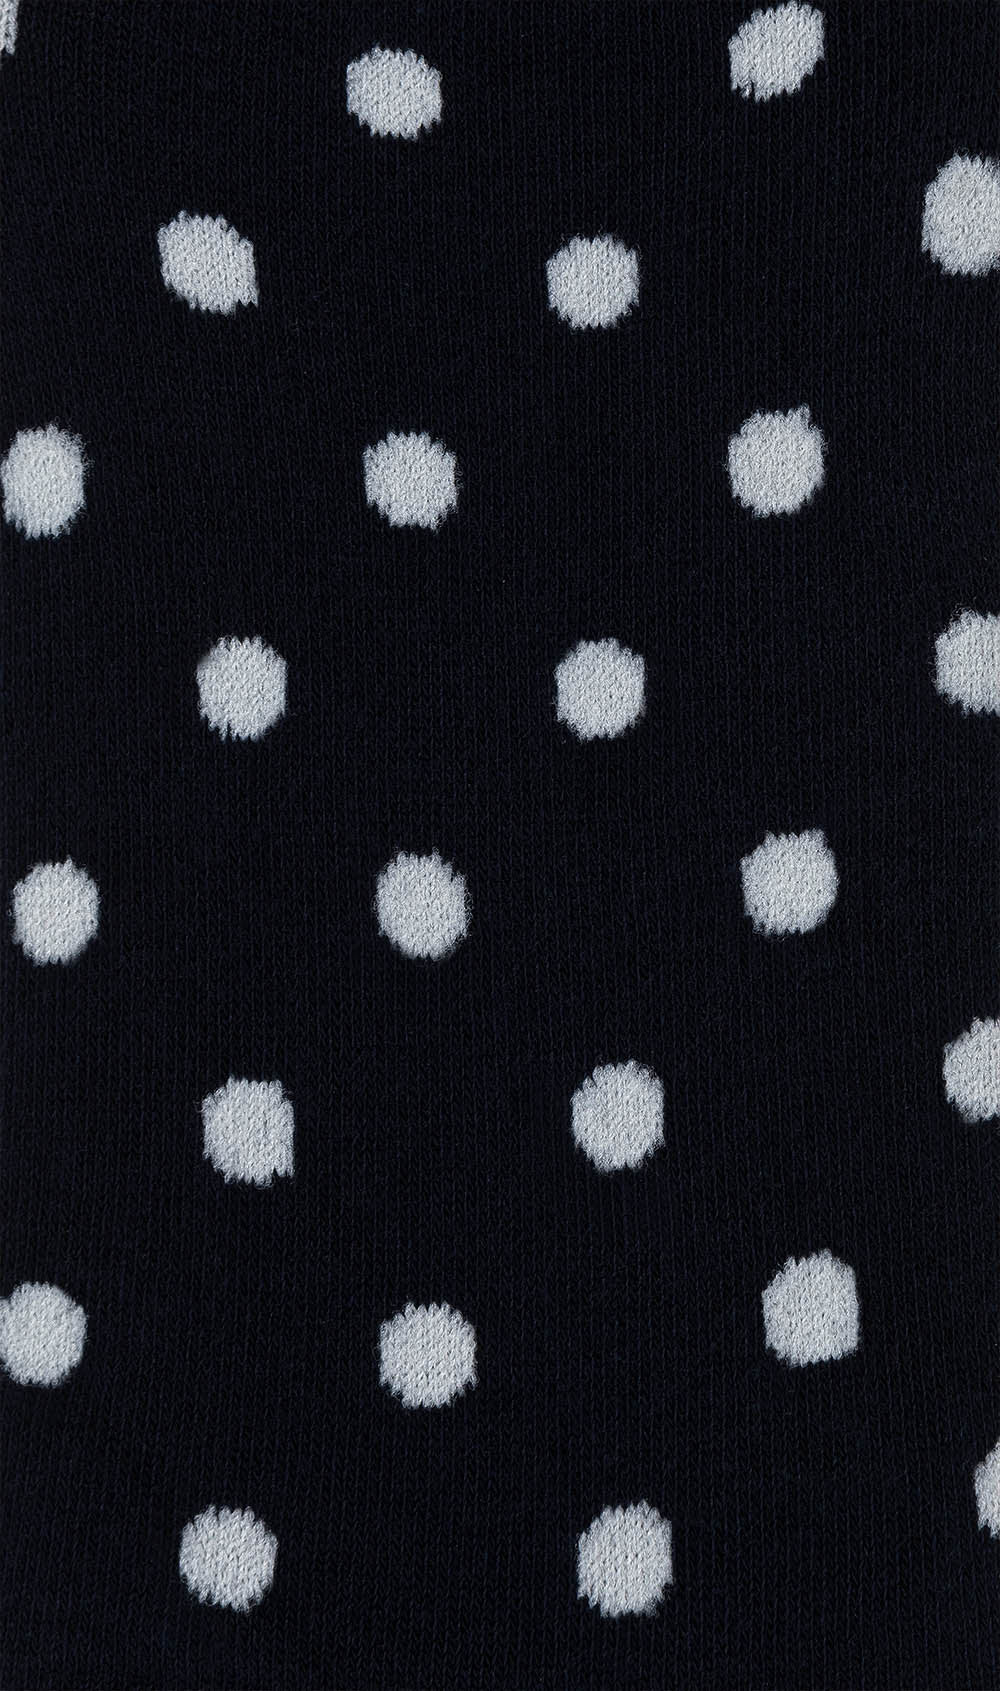 Midnight Blue Polka Dot Low Cut Socks Pattern